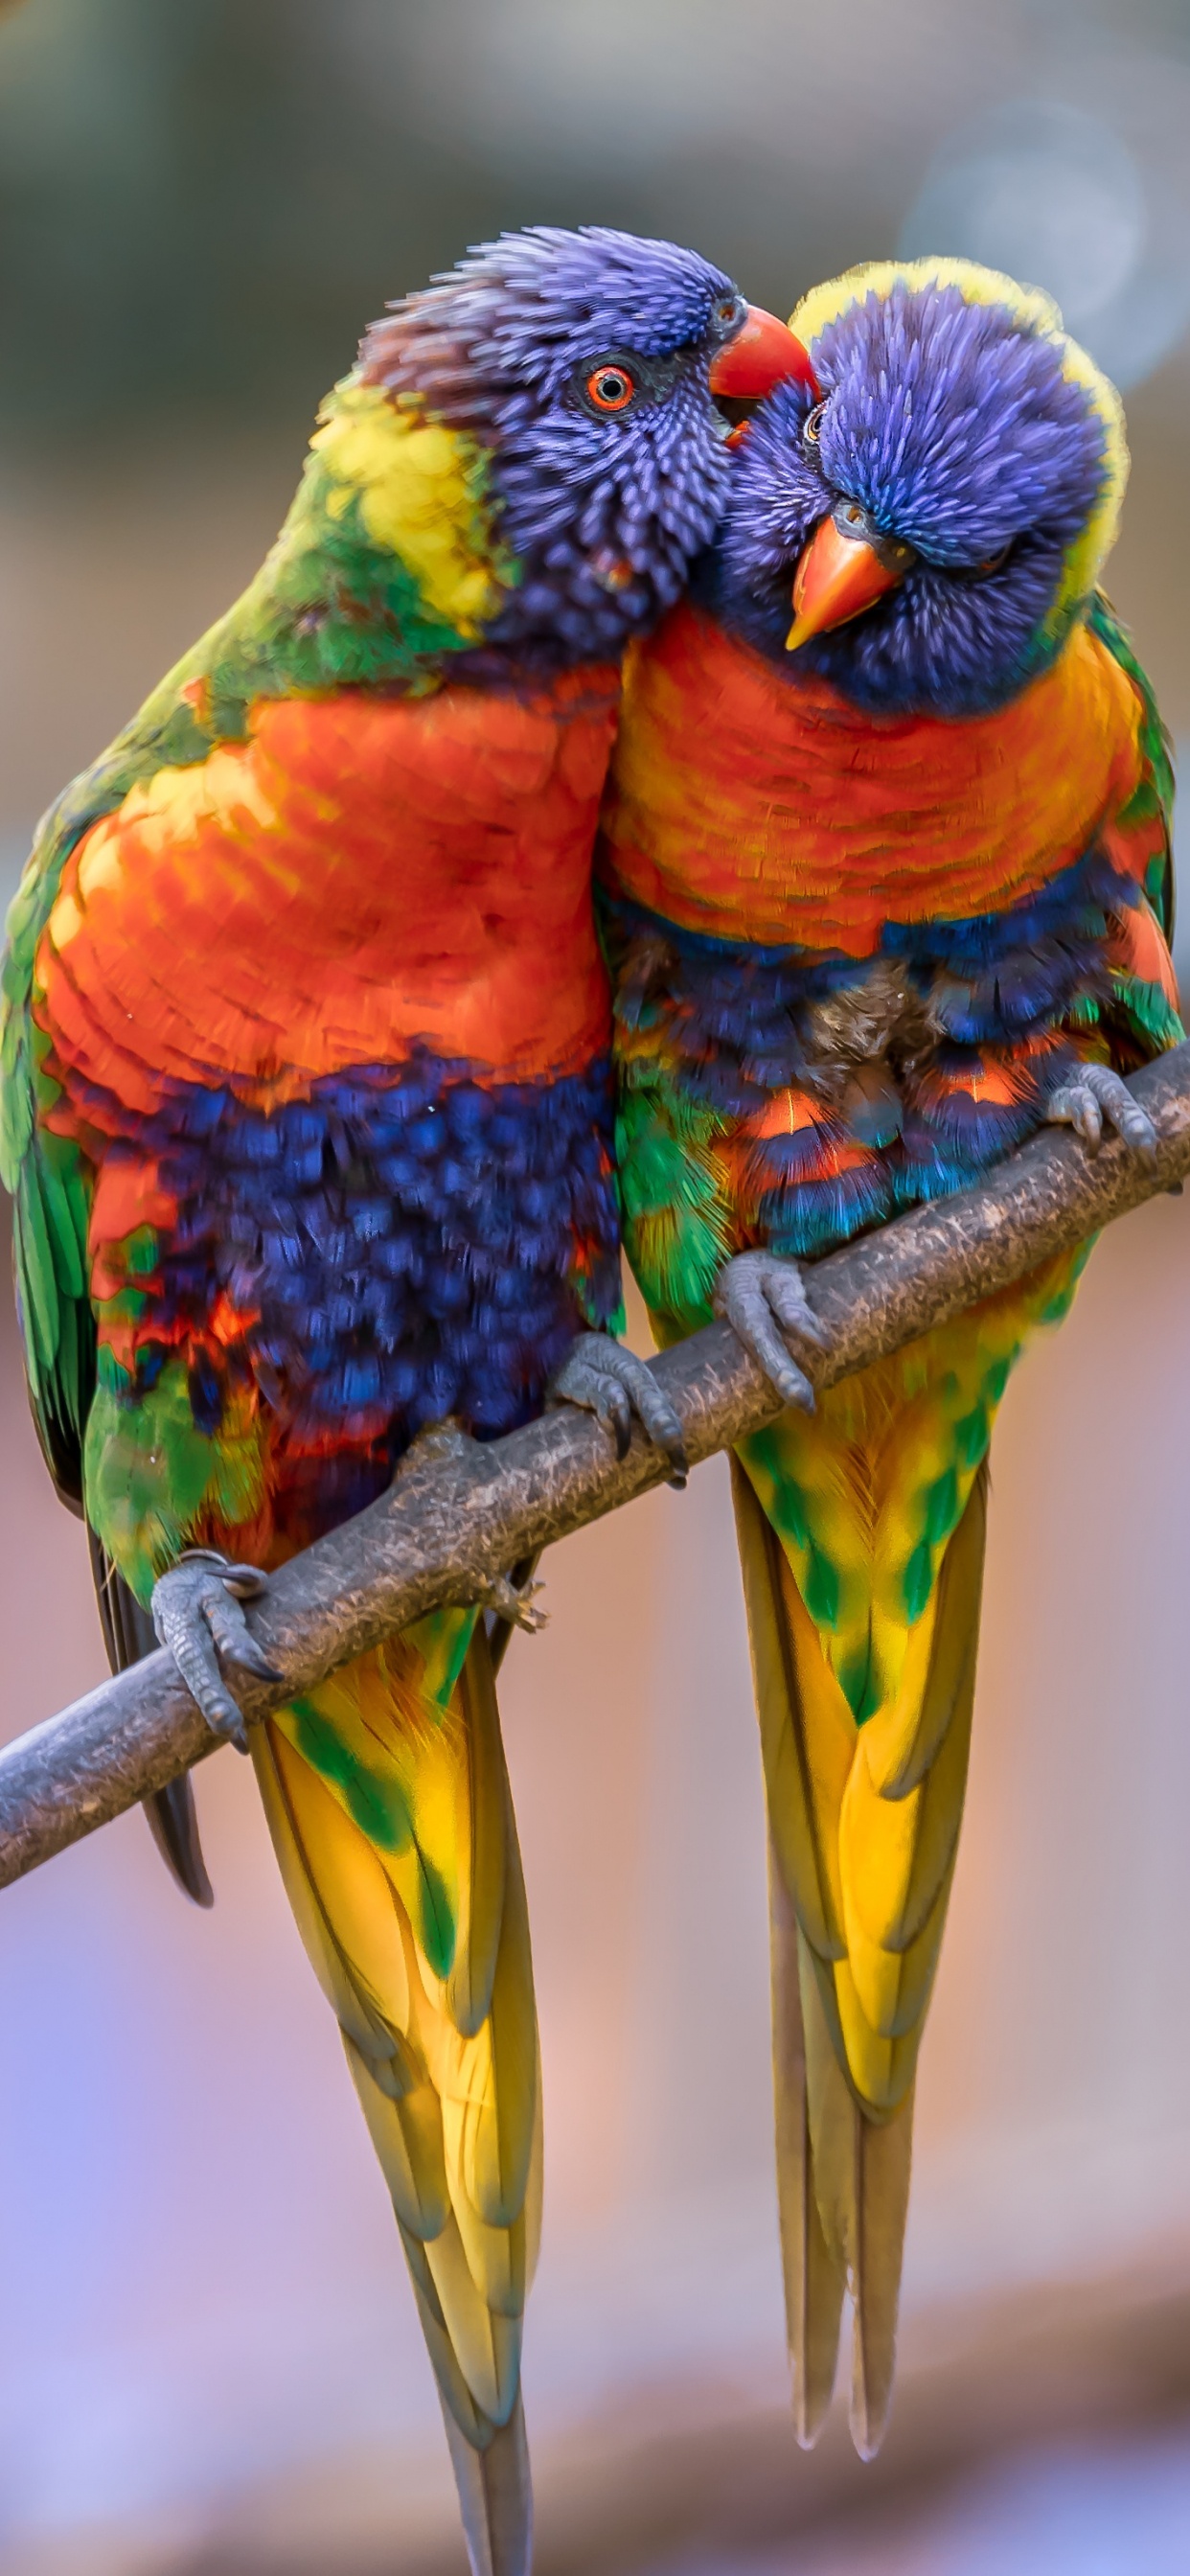 彩虹澳洲鹦鹉, 金刚鹦鹉, 鸟, 澳洲鹦鹉, 鹦鹉 壁纸 1242x2688 允许